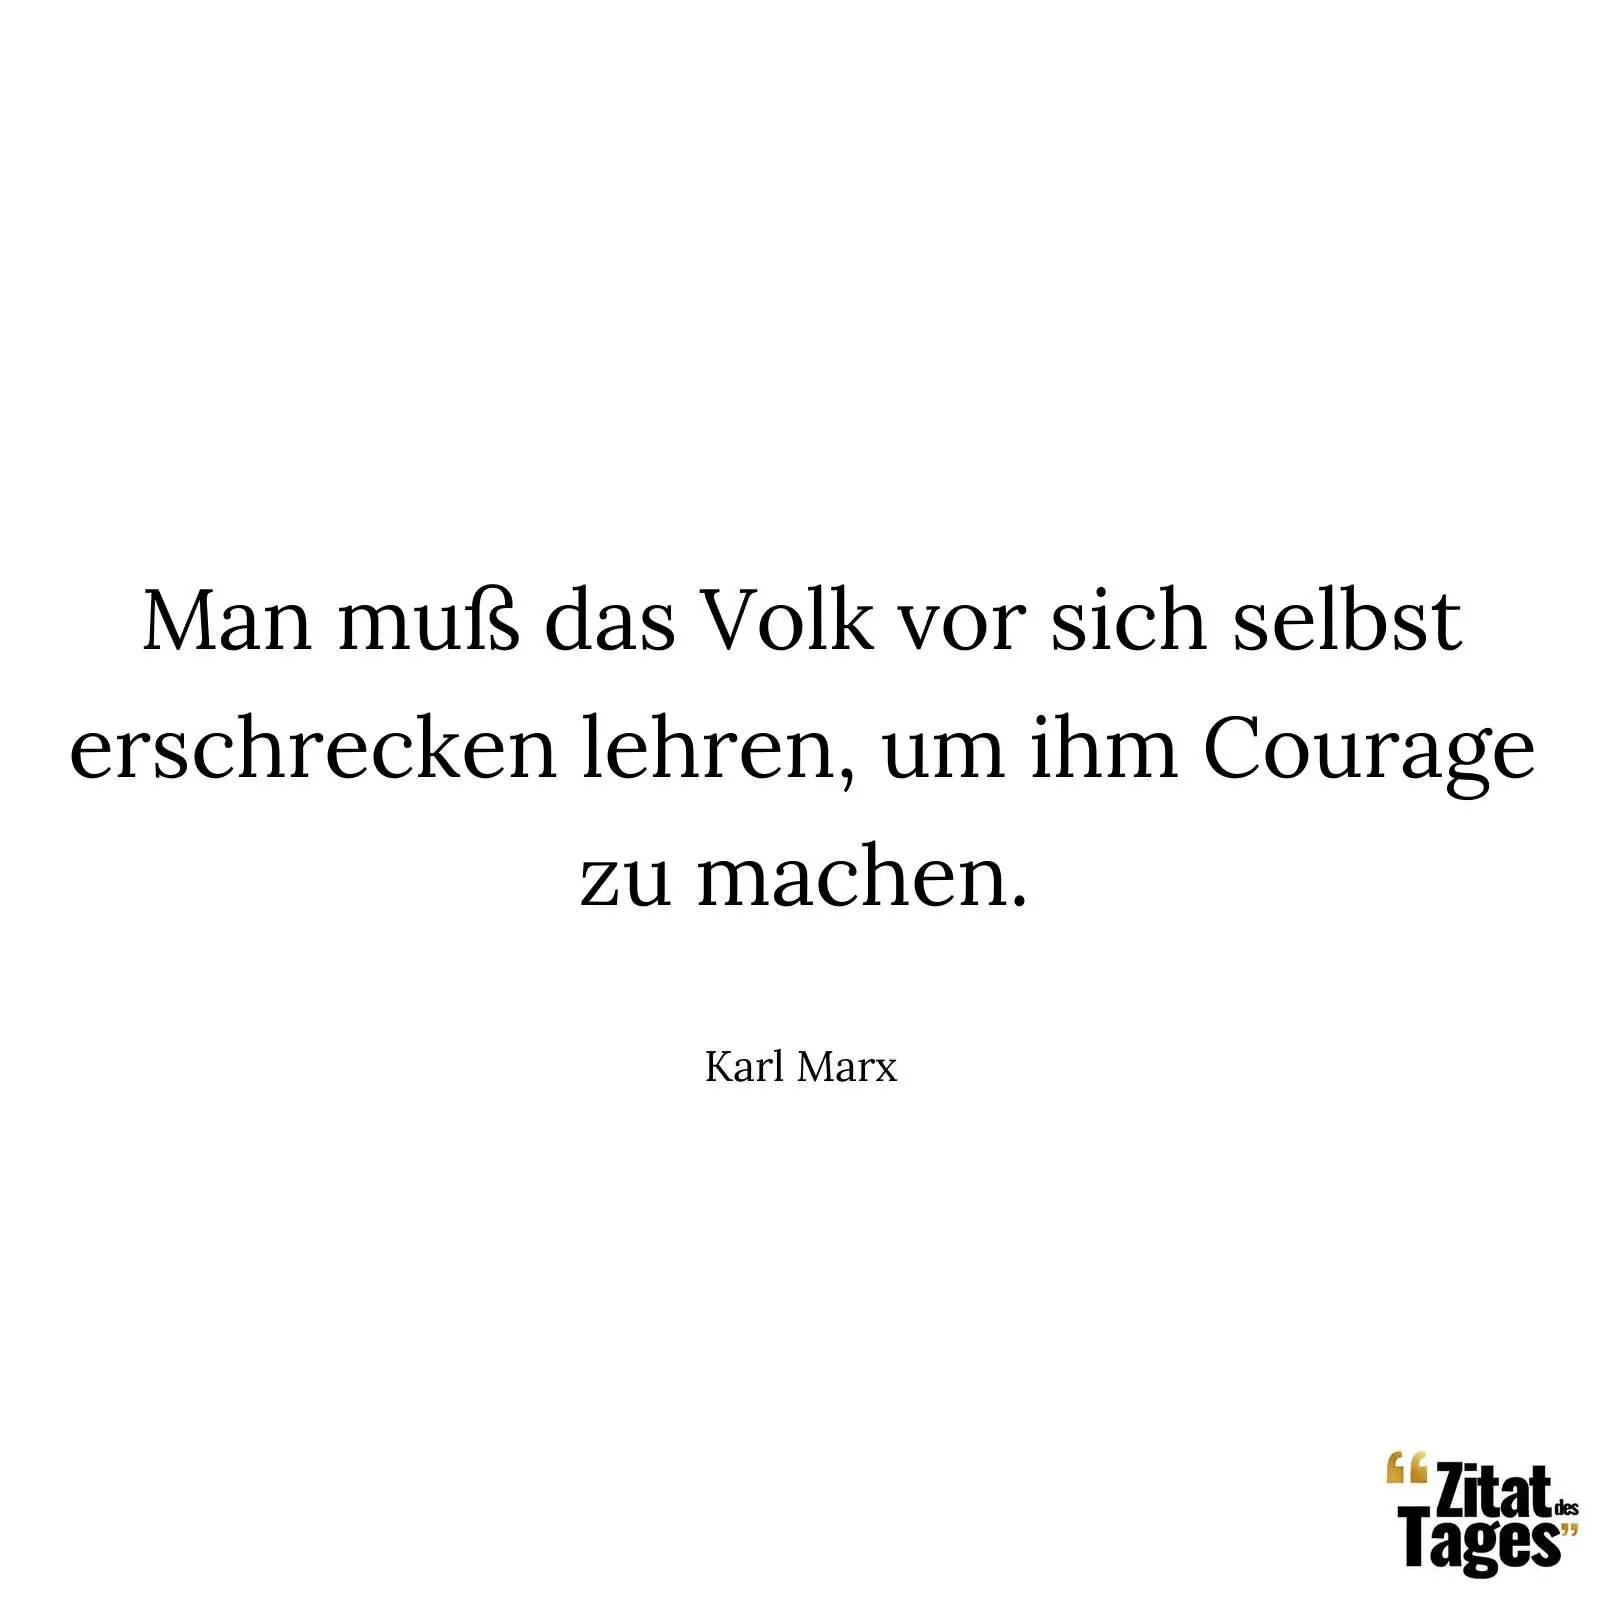 Man muß das Volk vor sich selbst erschrecken lehren, um ihm Courage zu machen. - Karl Marx